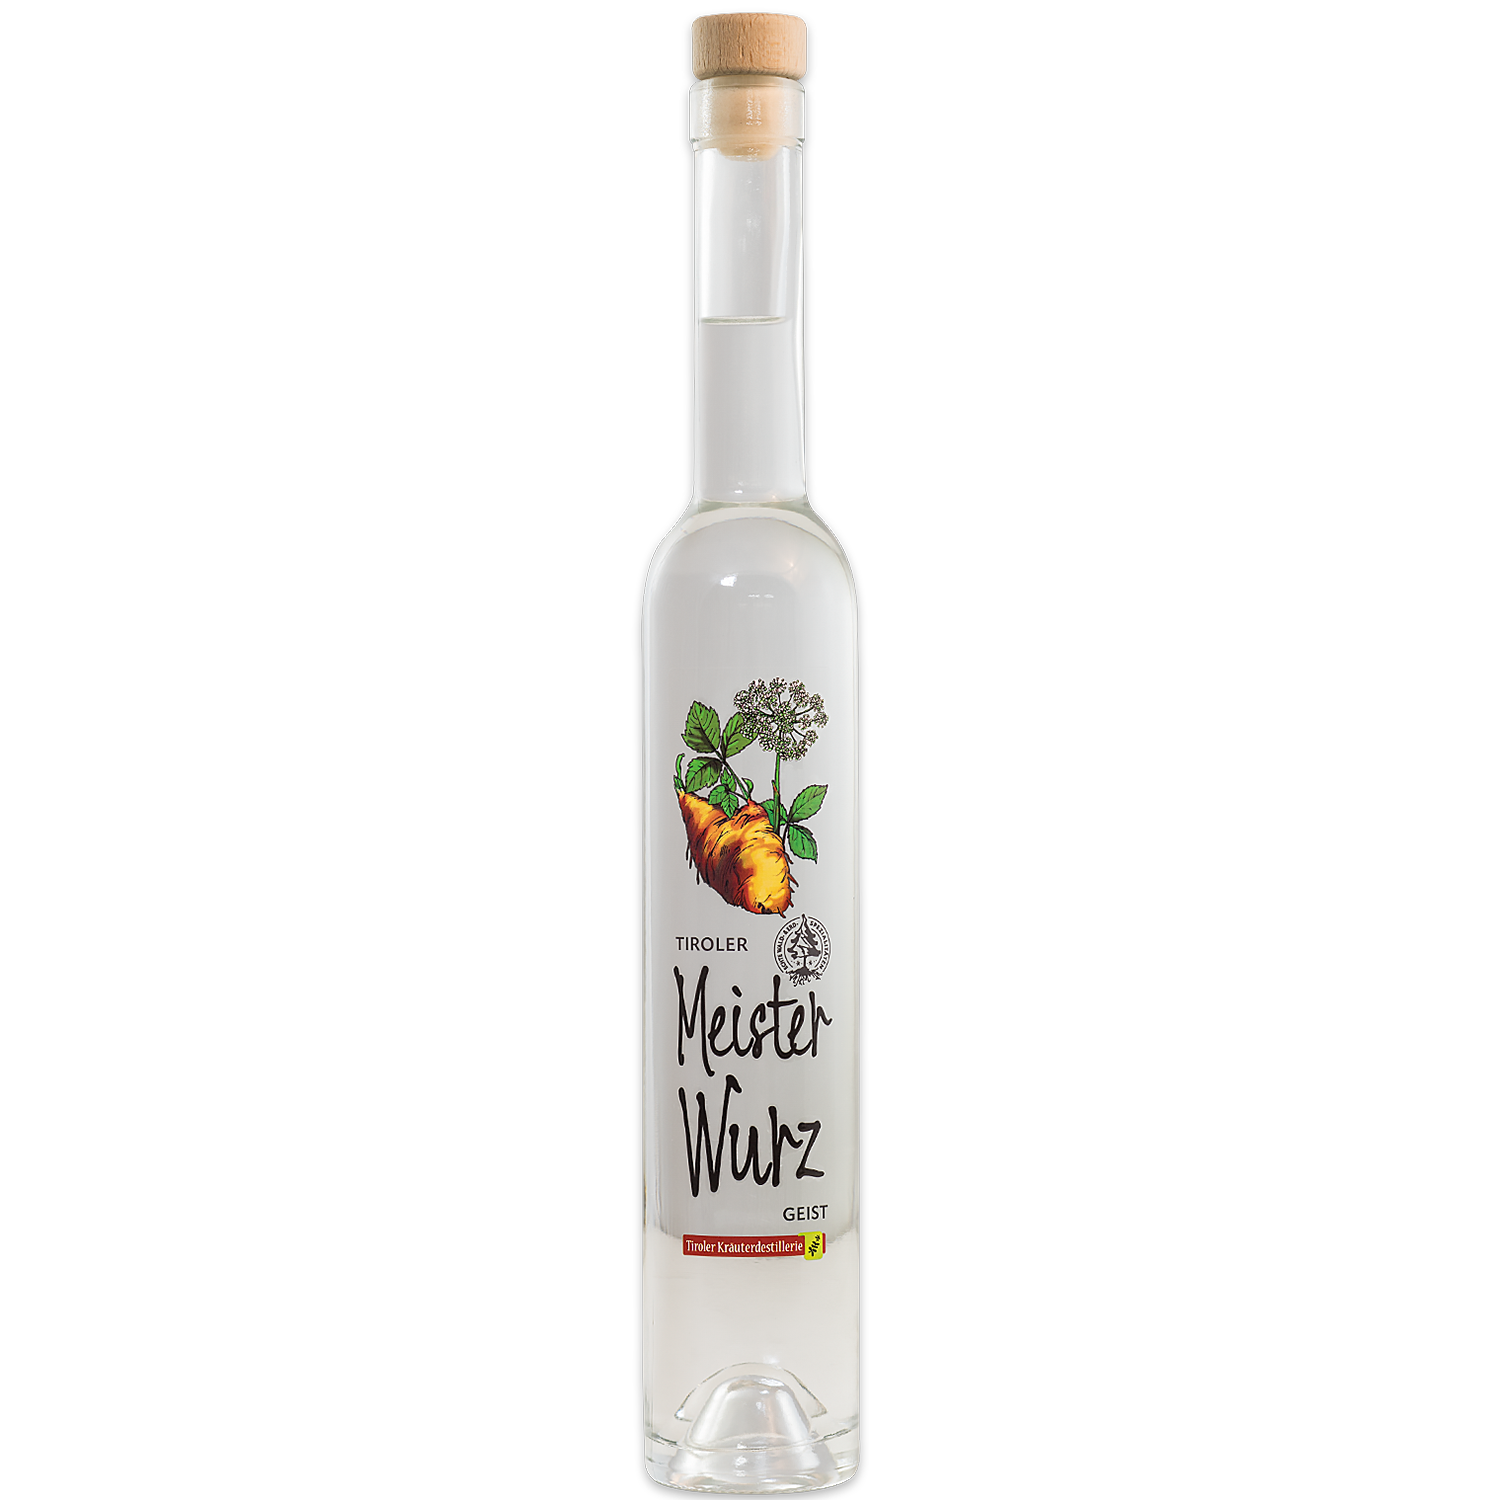 Masterworth spirit from the Tiroler Kräuterdestillerie in a noble bottle